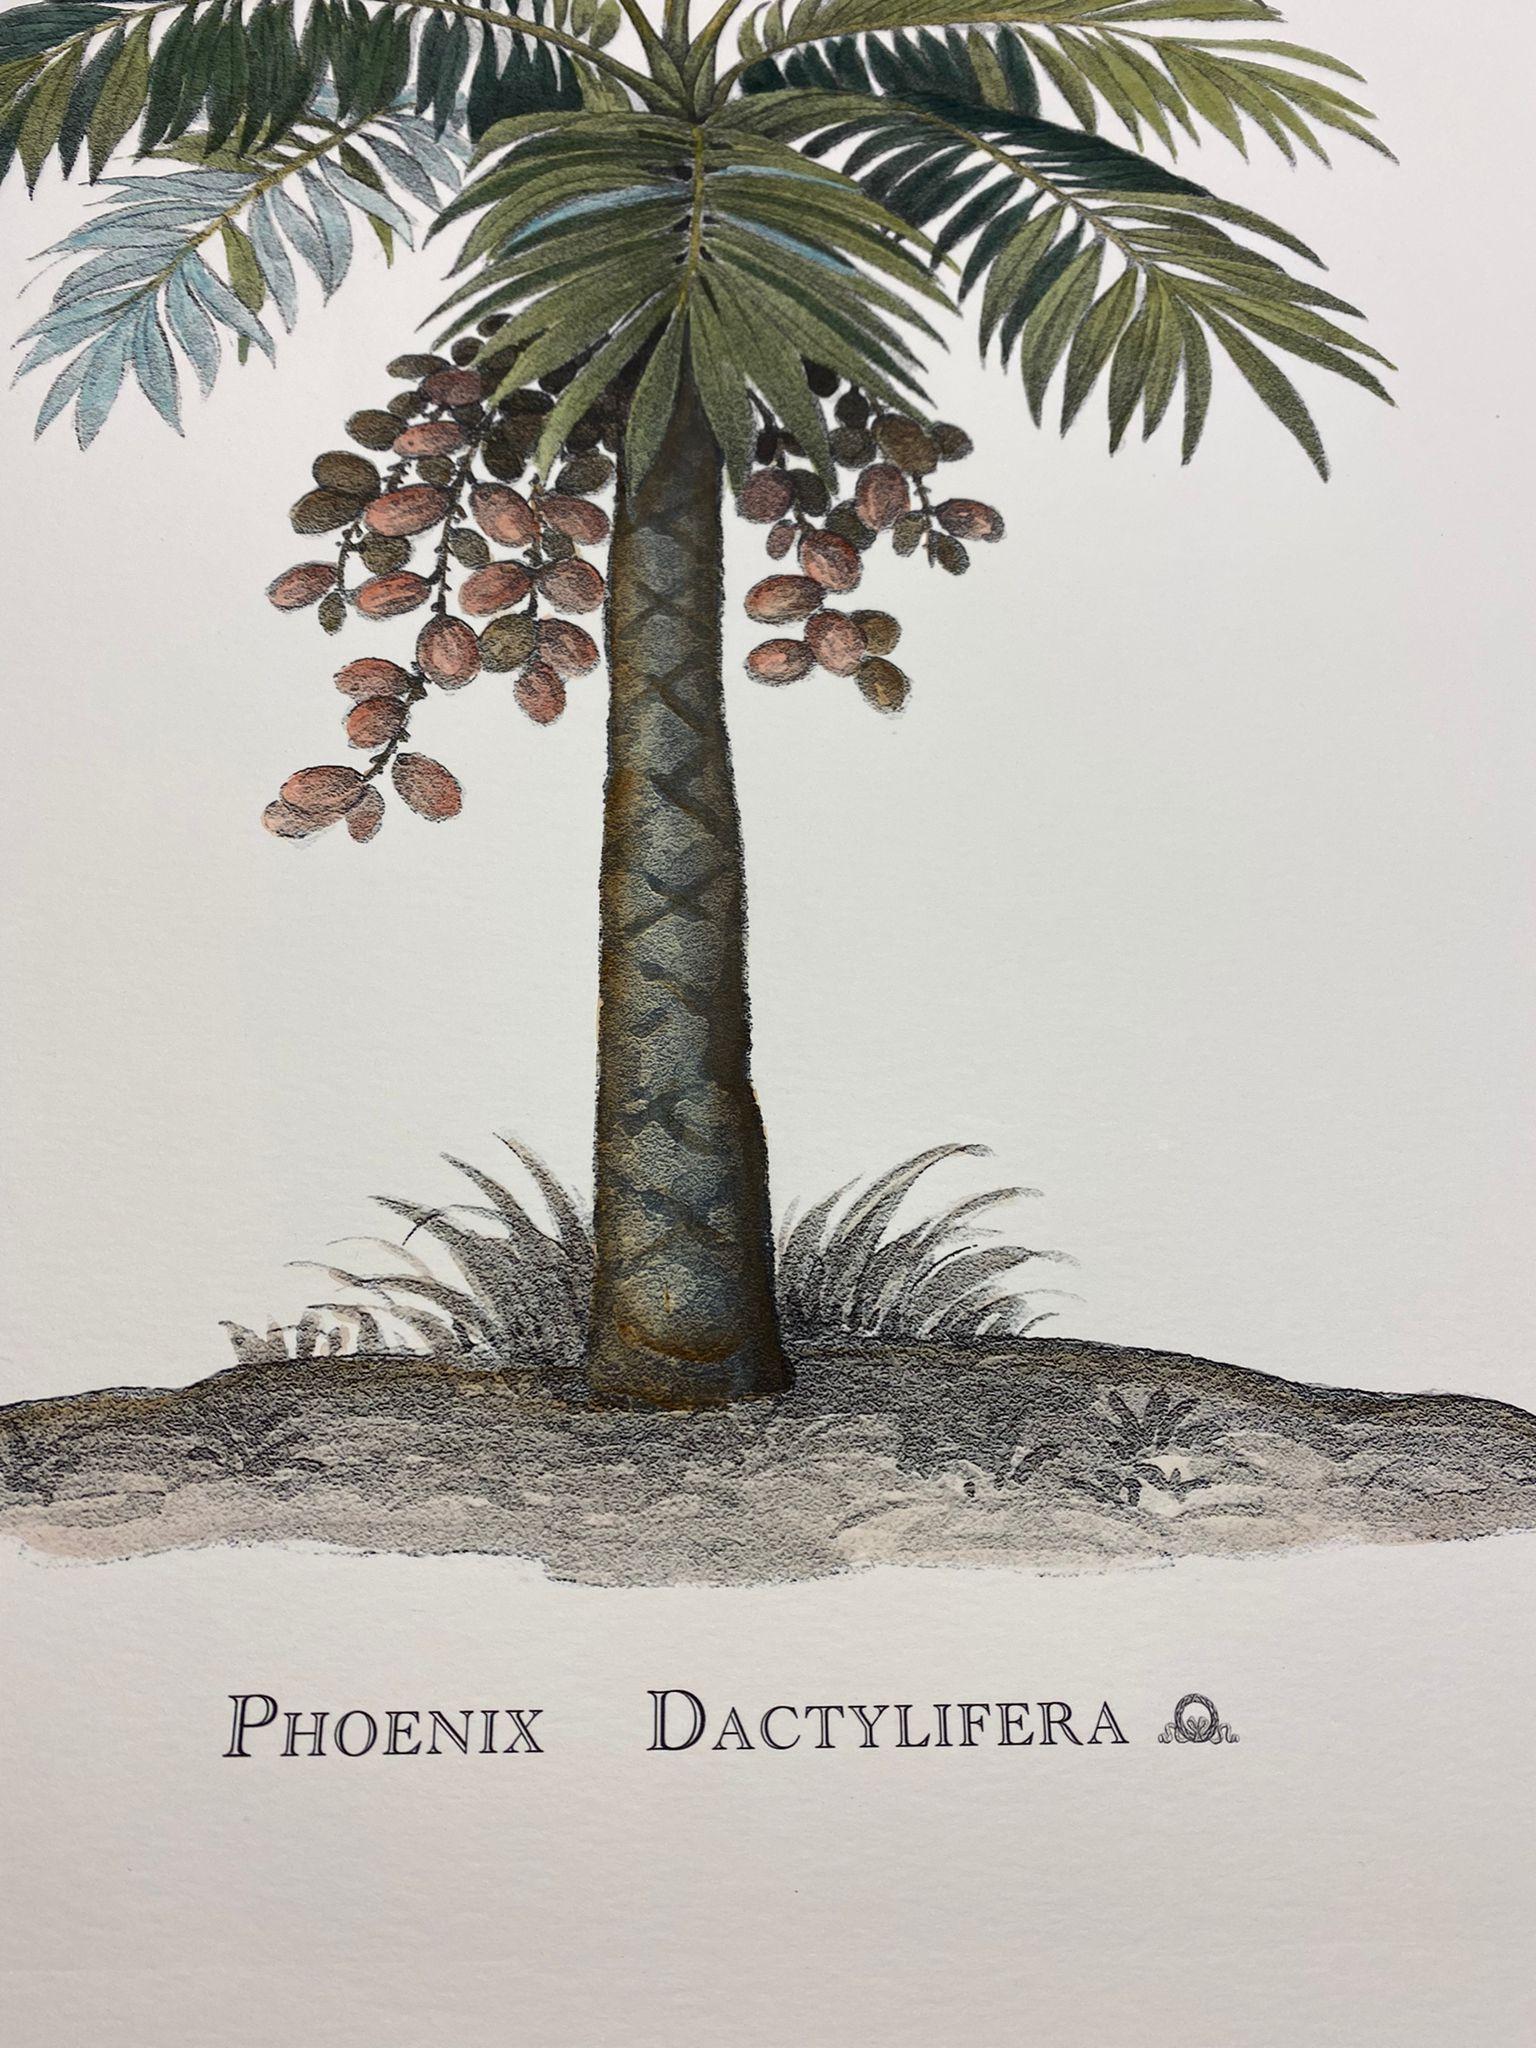 Élégante estampe aquarellée à la main représentant le Phoenix Dactylifera, de la famille des palmiers.

Cet imprimé de style botanique se décline en 4 représentations naturelles différentes pour créer une composition lumineuse et joyeuse :
- Musa